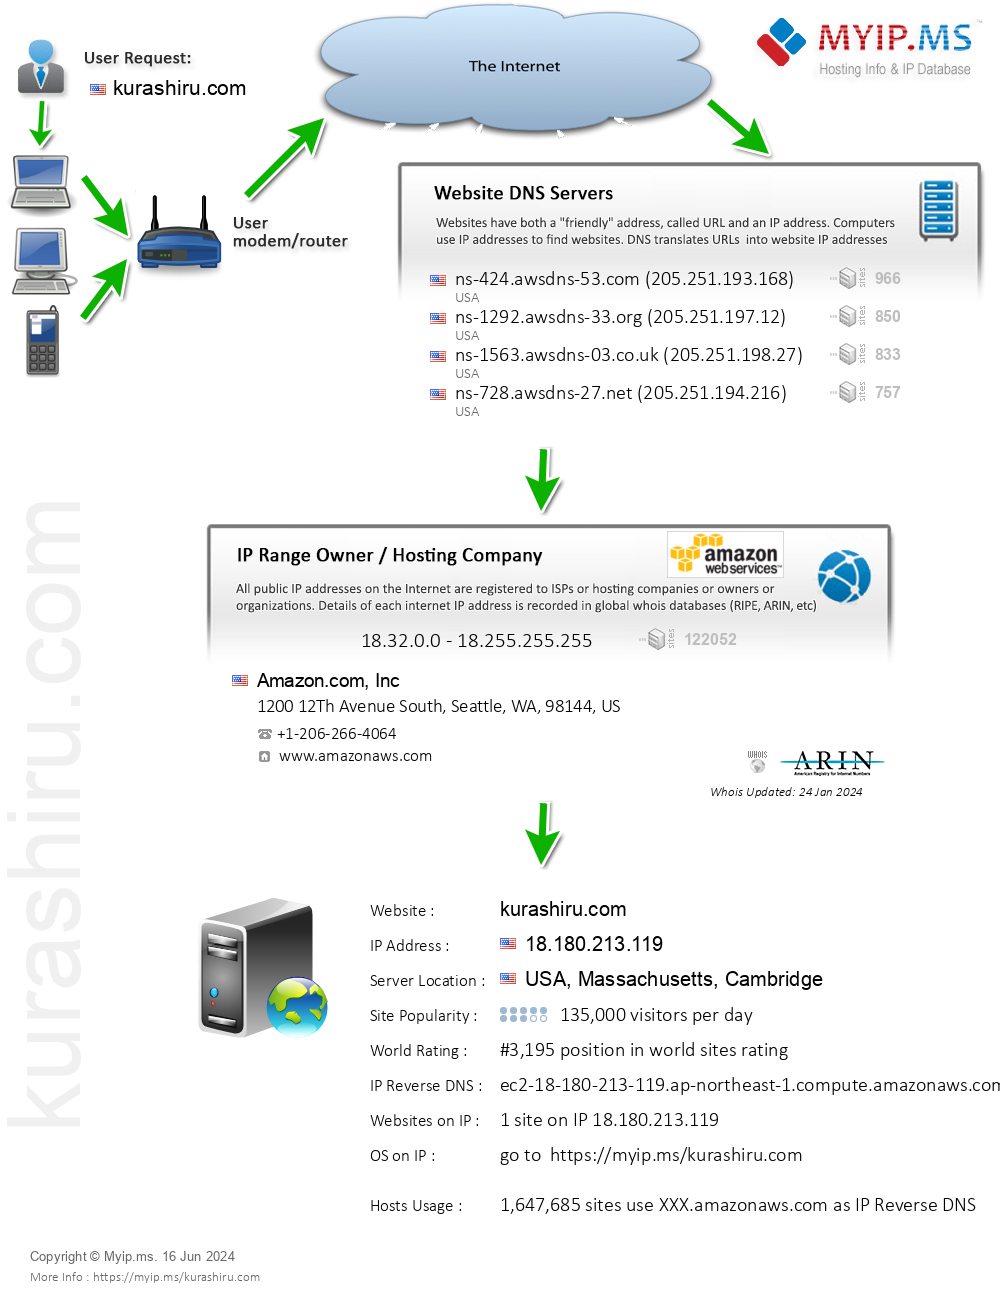 Kurashiru.com - Website Hosting Visual IP Diagram